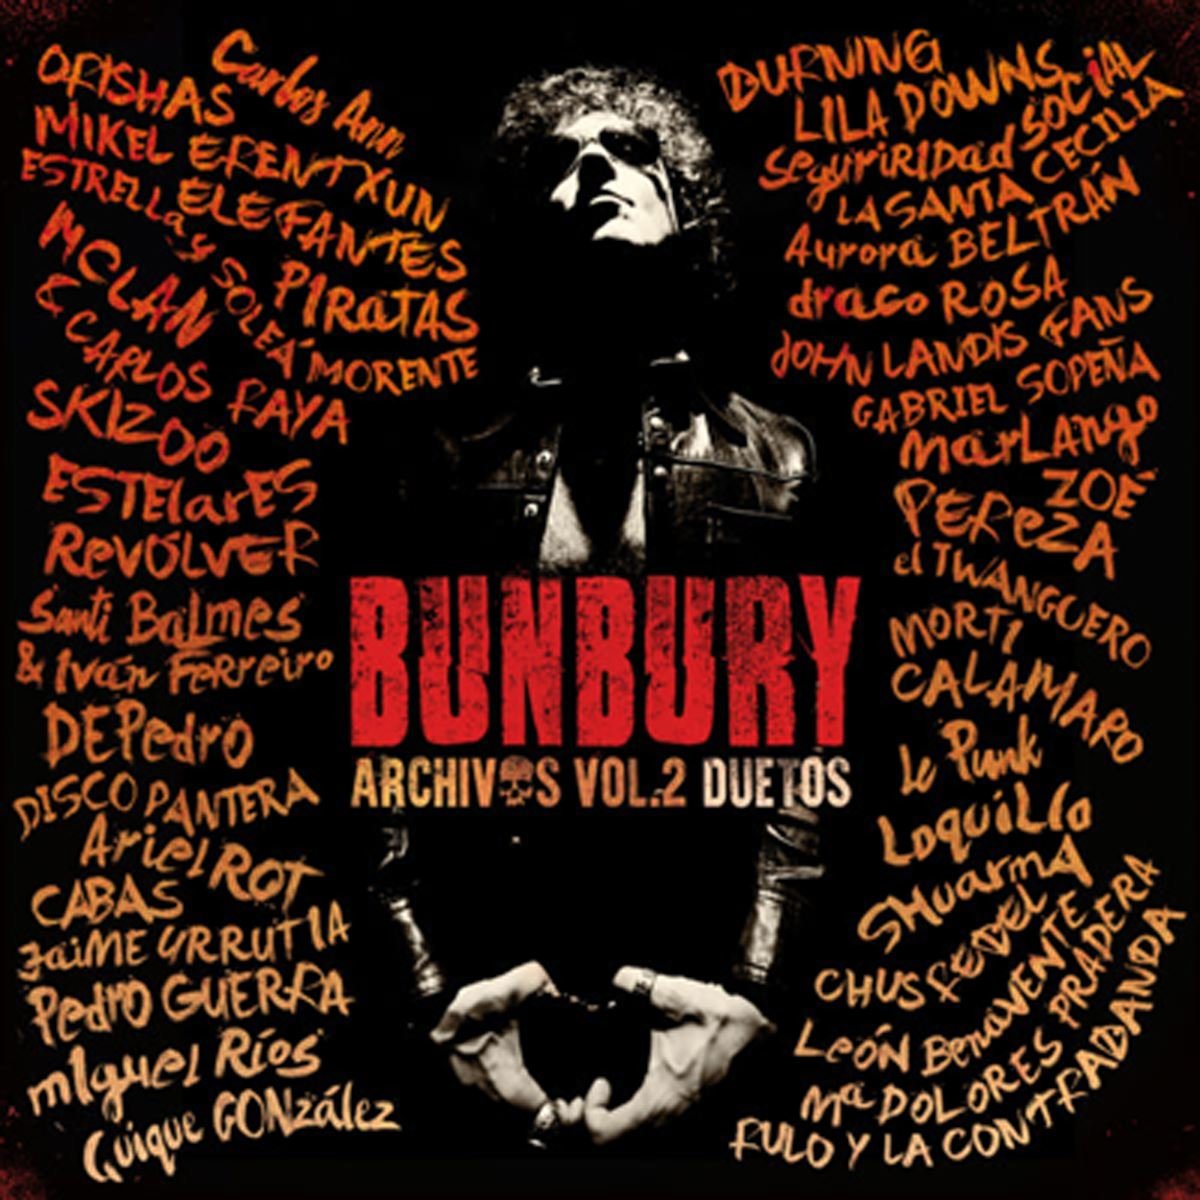 CD Enrique Bunbury Archivos Vol. 2: Duetos